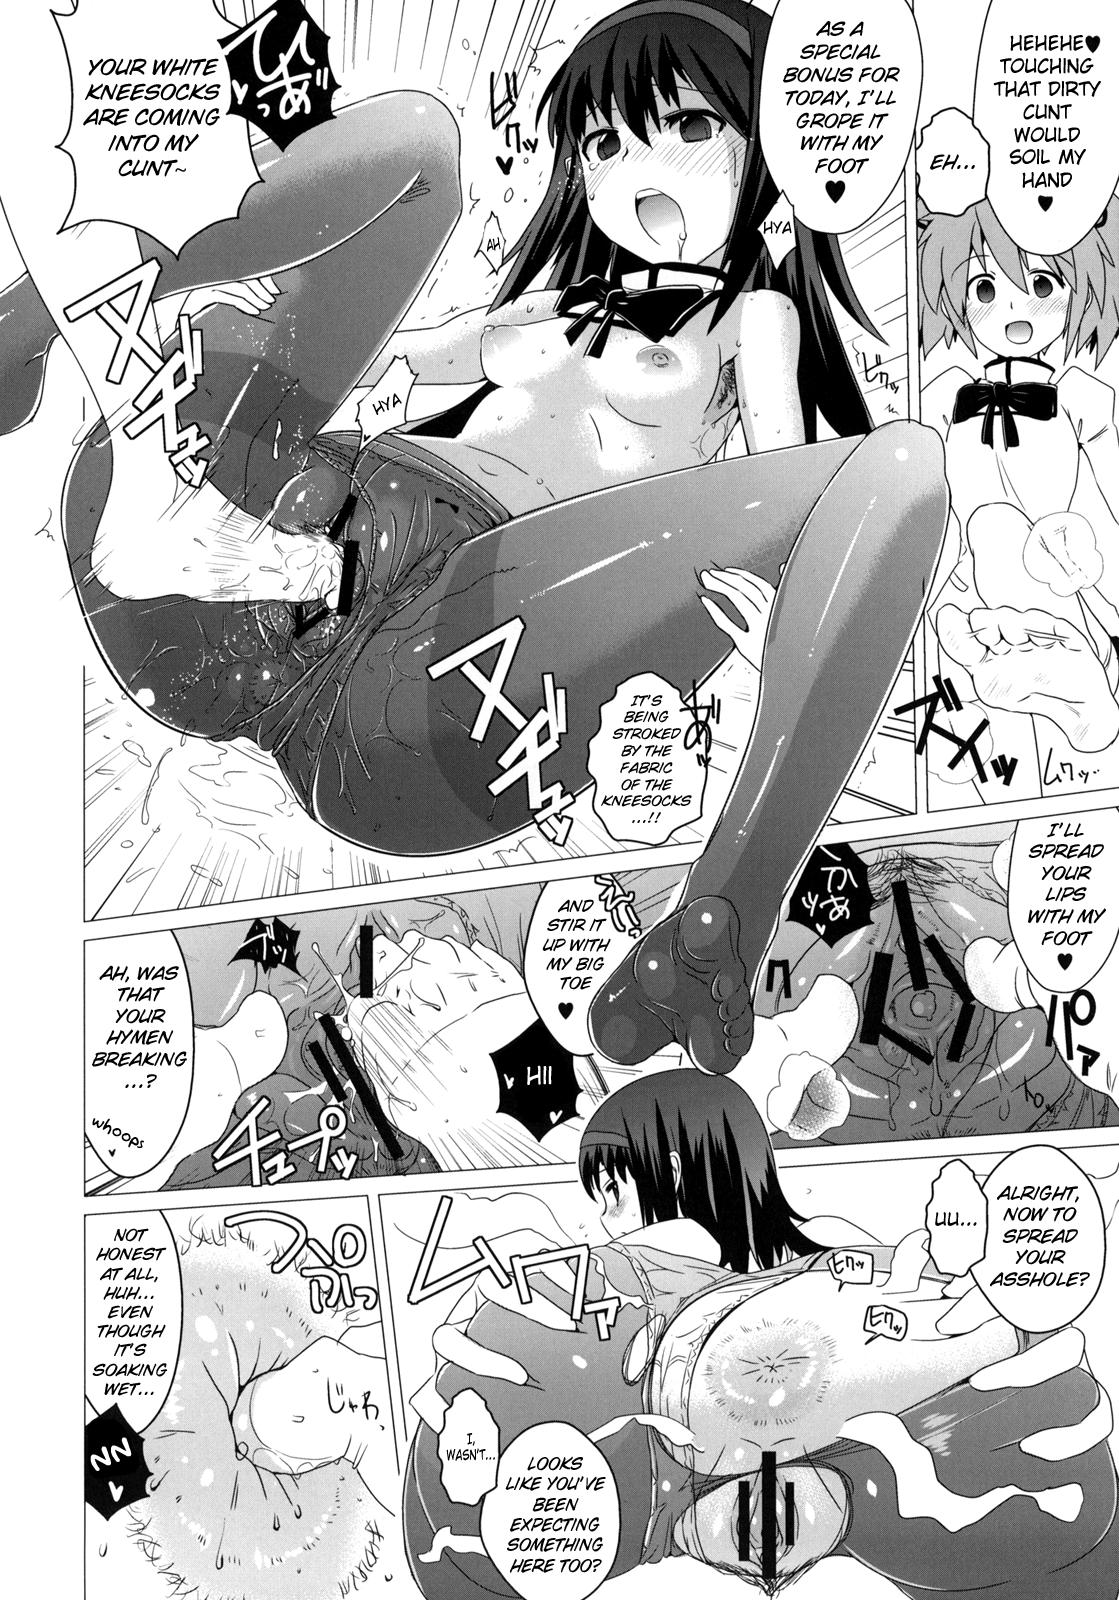 Pervs Hentai Musume + Omake Paper - Puella magi madoka magica Titties - Page 11